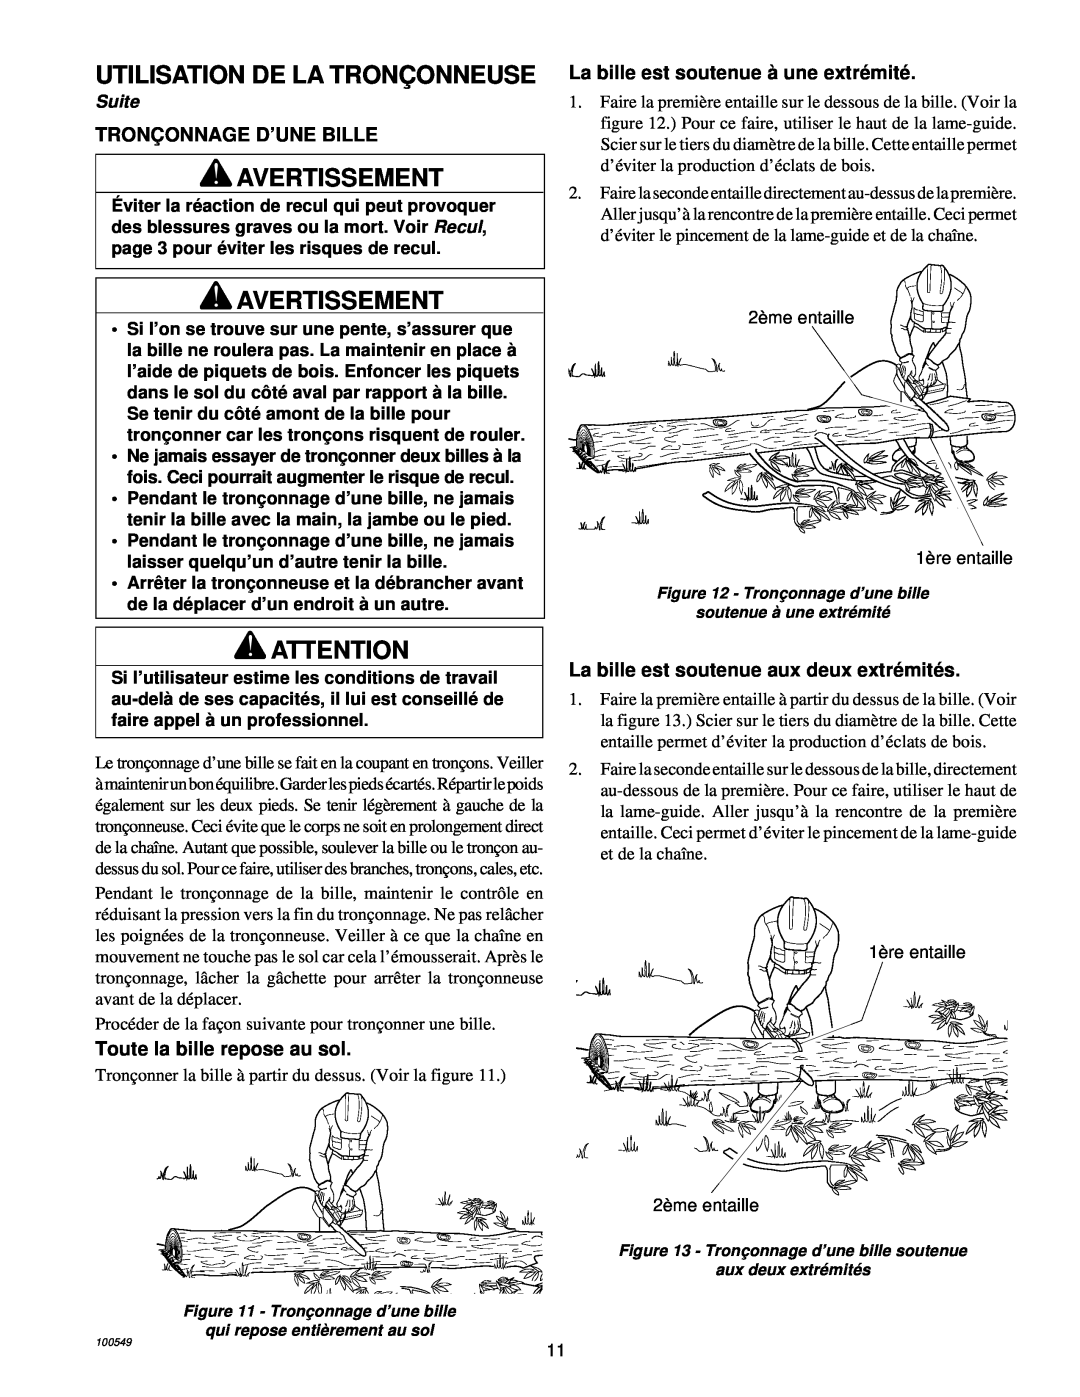 MasterCraft 100524-01, CS-120CB Utilisation De La Tronç Onneuse, Avertissement, Tronç Onnage D’Une Bille, Suite 